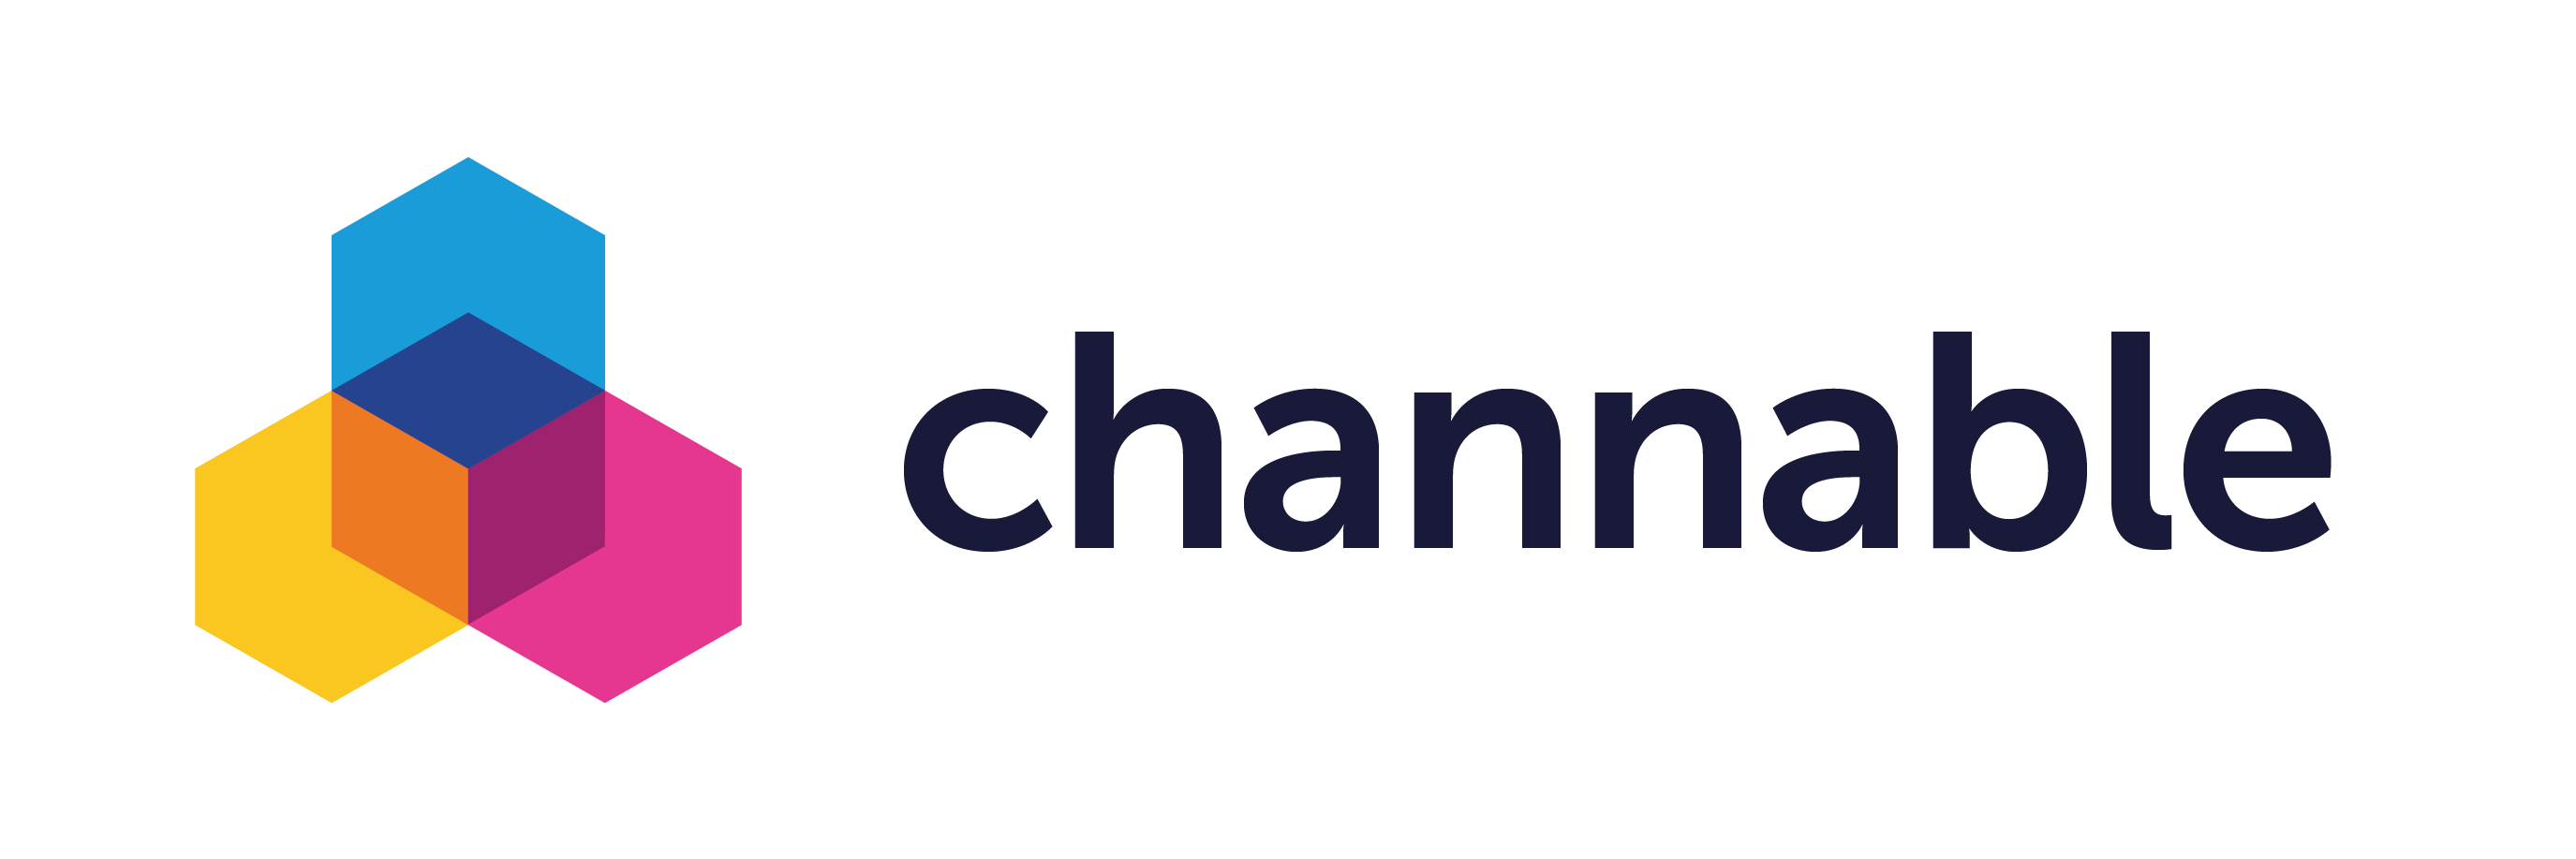 logo_channable